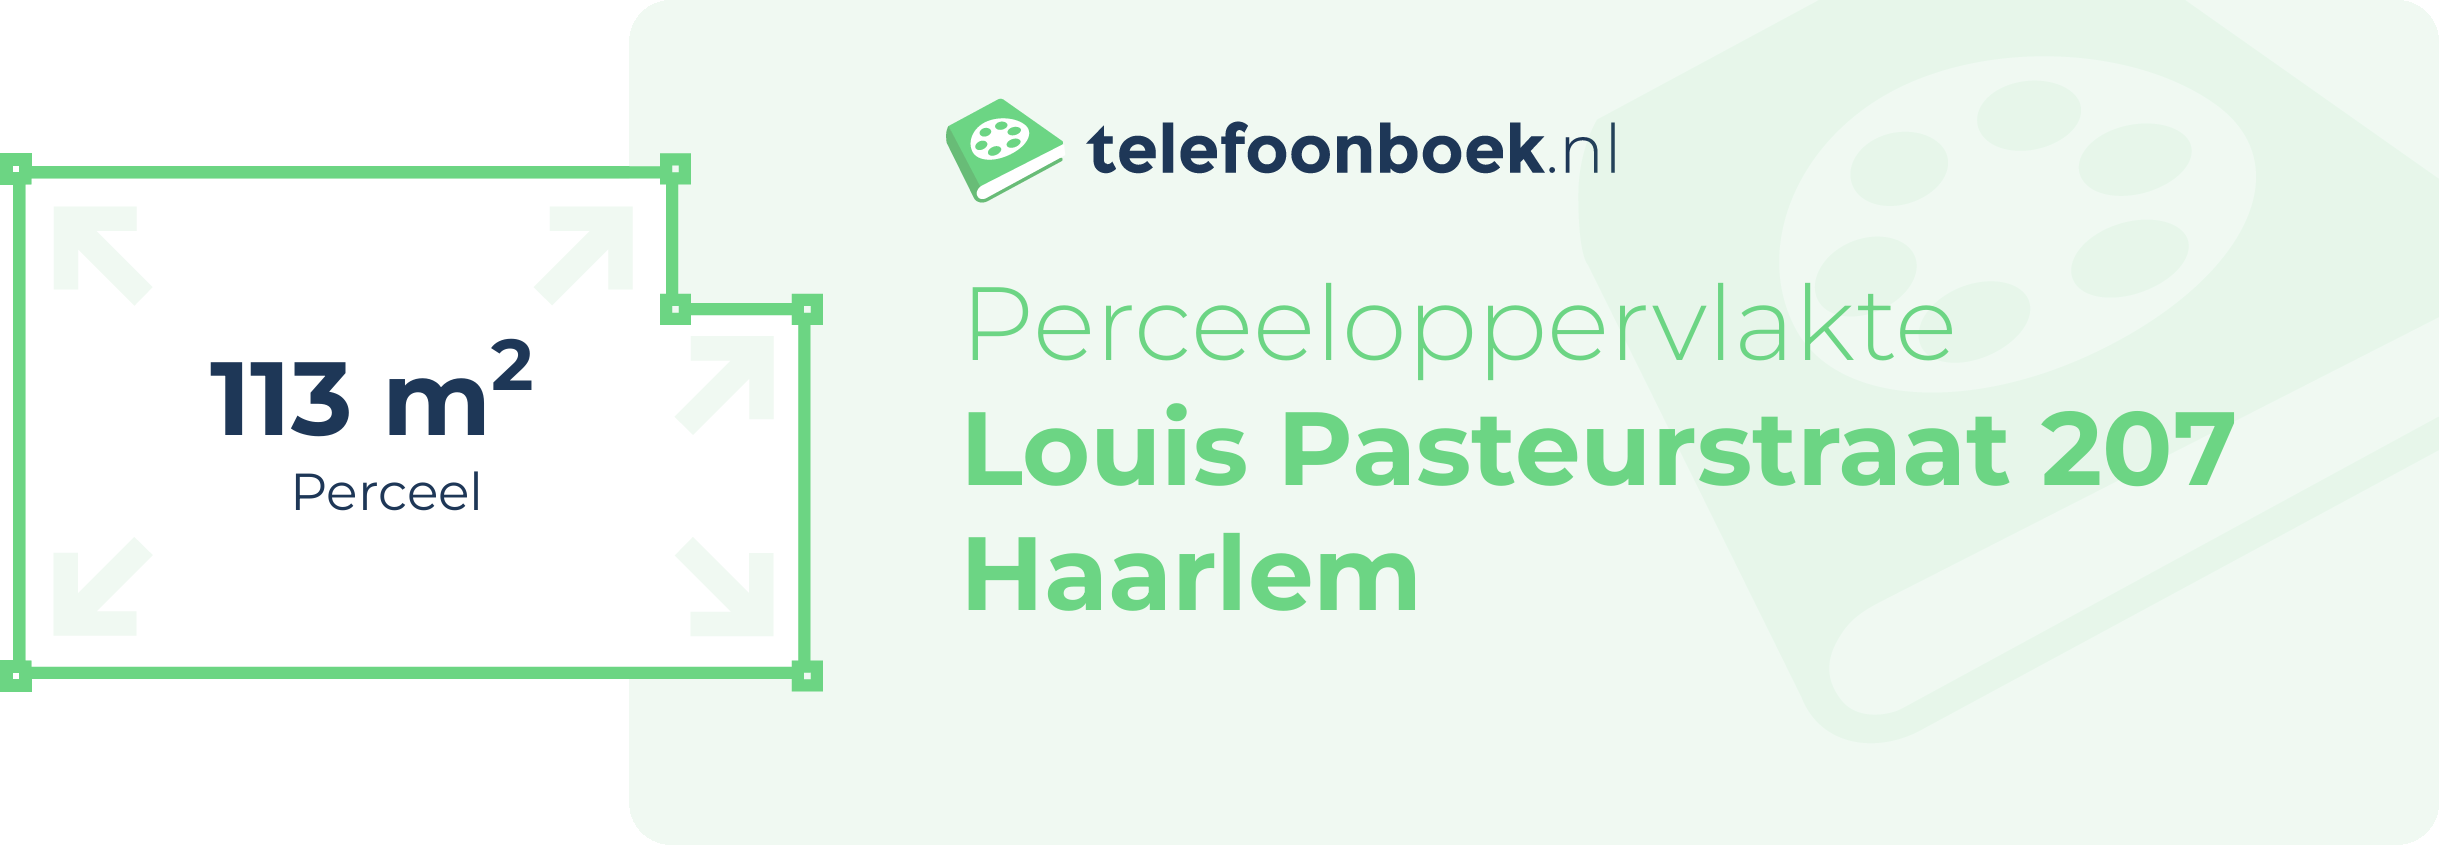 Perceeloppervlakte Louis Pasteurstraat 207 Haarlem